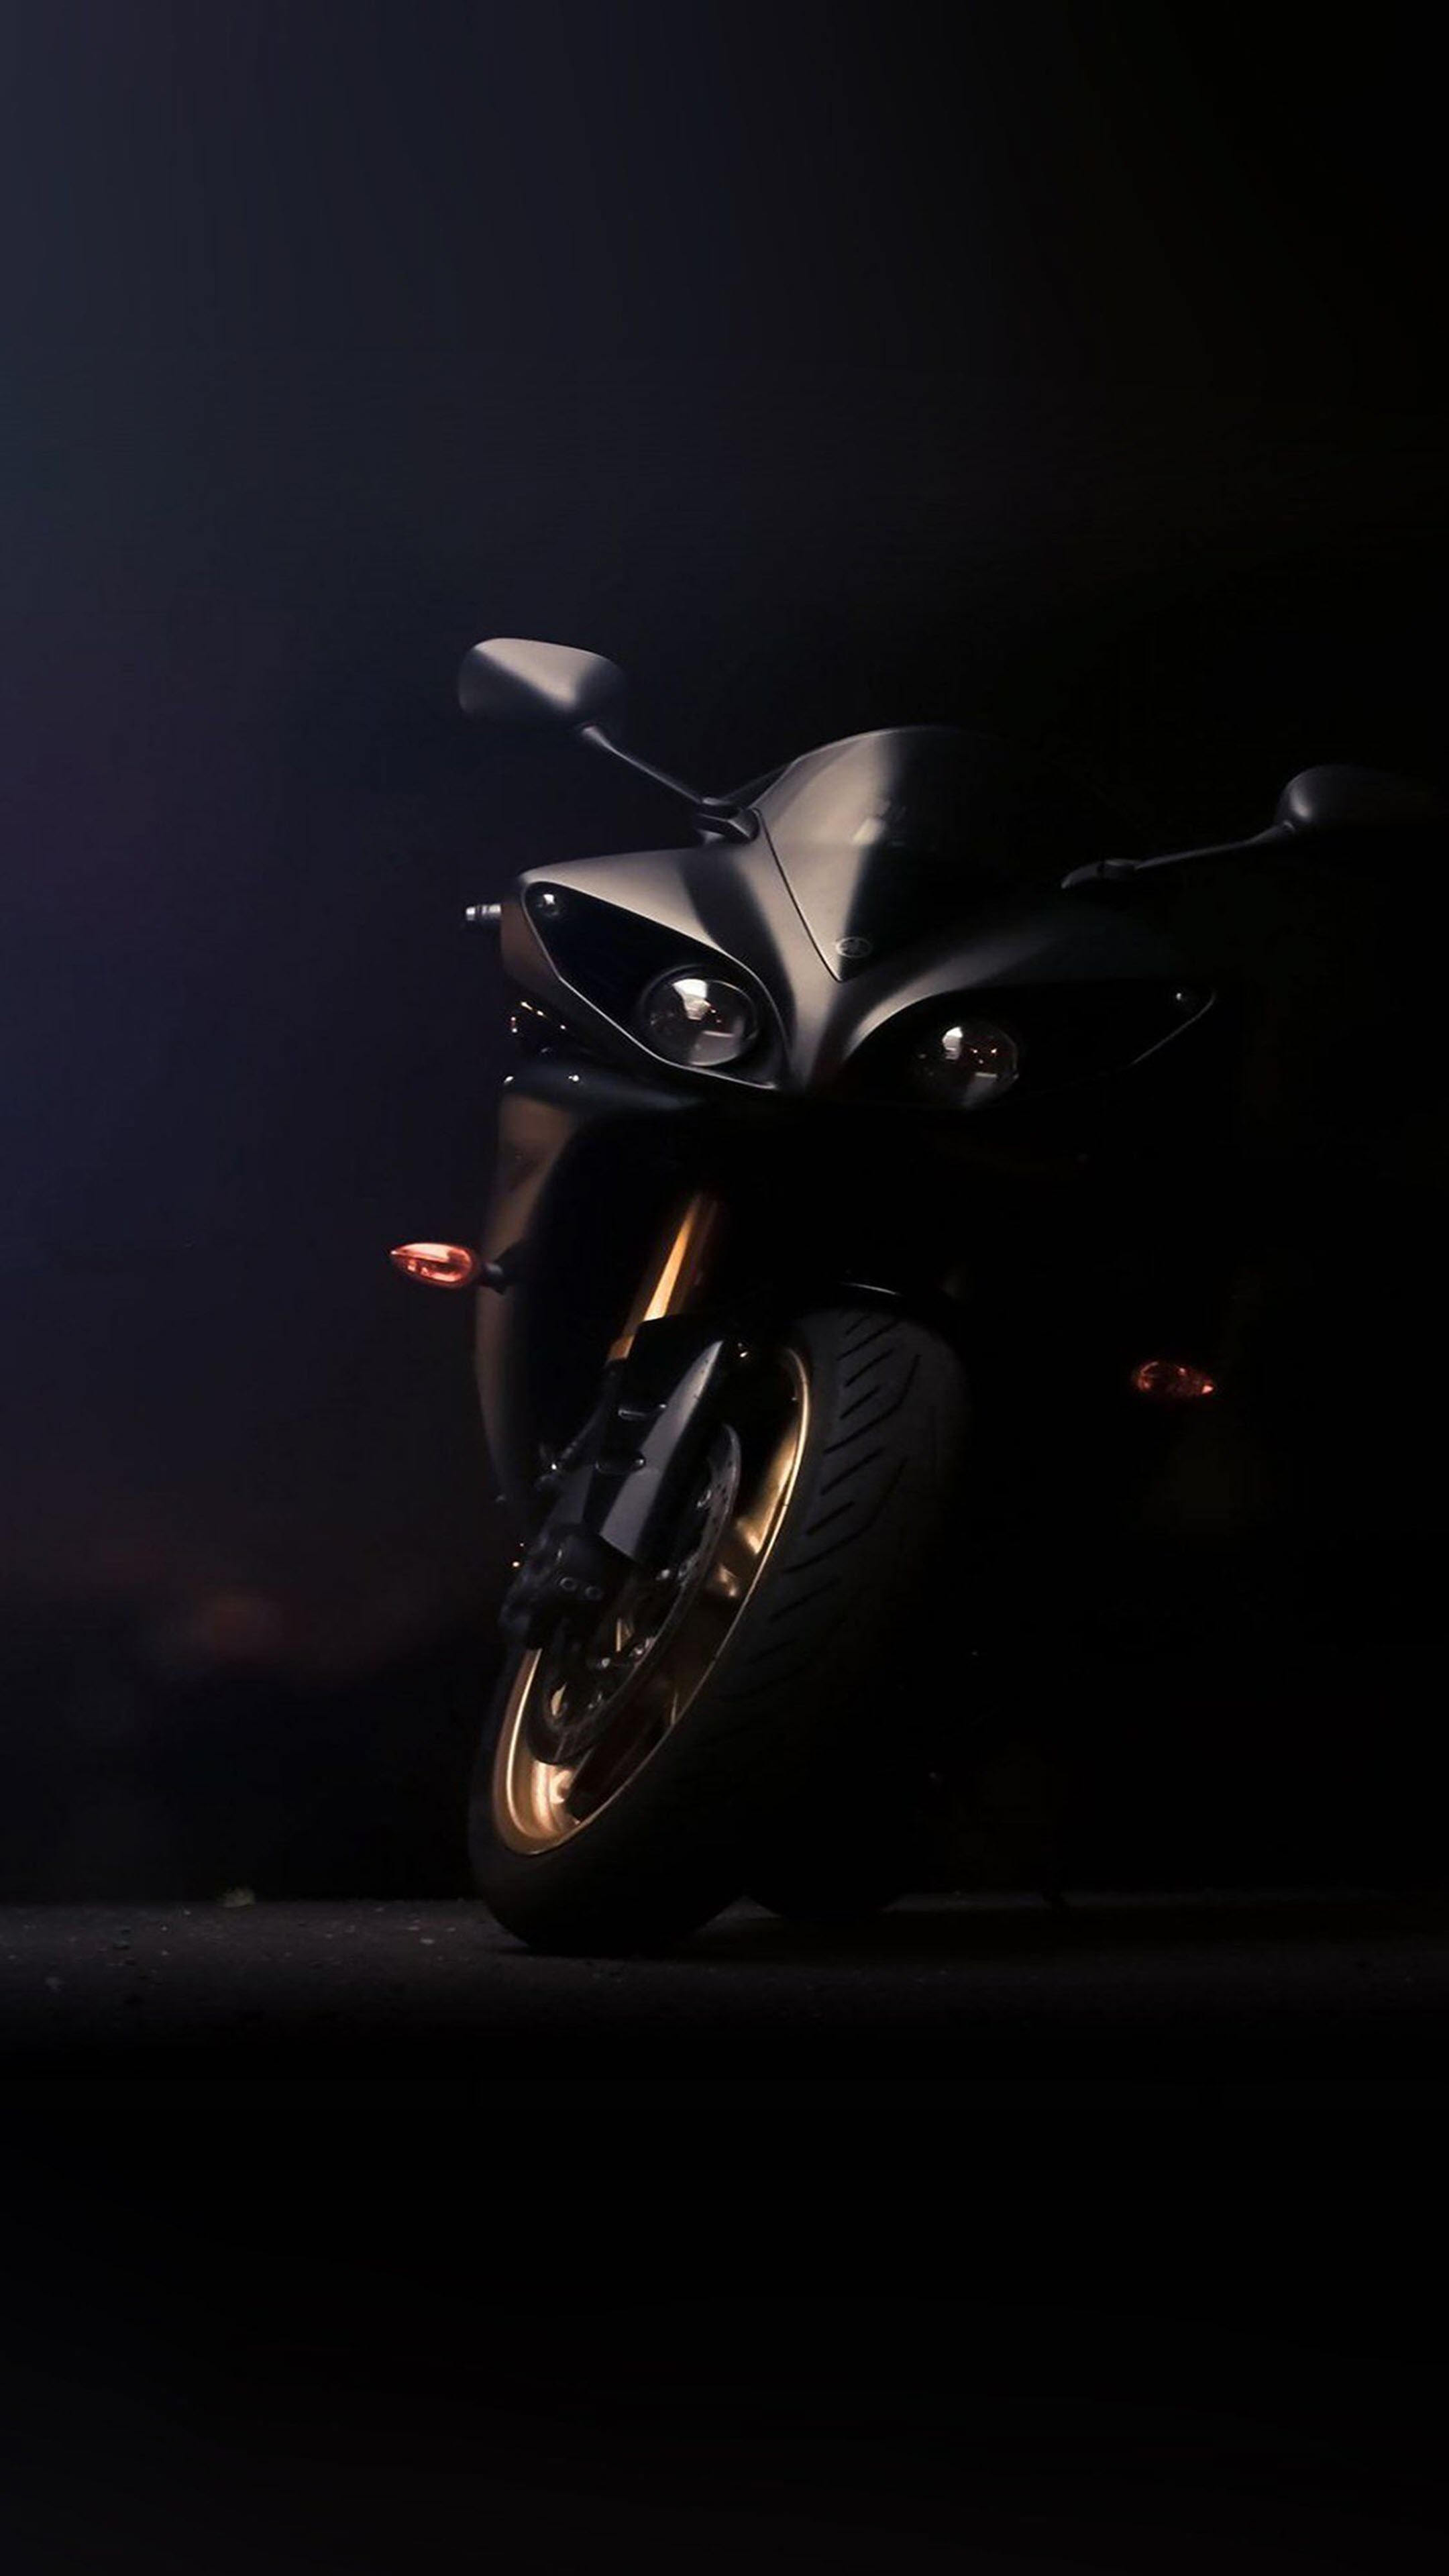 Bạn đang tìm kiếm một tấm hình nền độc đáo cho điện thoại của mình? Hãy truy cập ngay vào ảnh Moto 4K để khám phá những hình ảnh tuyệt đẹp về dòng xe moto đẳng cấp. Sắc nét và chân thật như thể bạn đang đứng ngay trước chiếc xe mơ ước của mình.